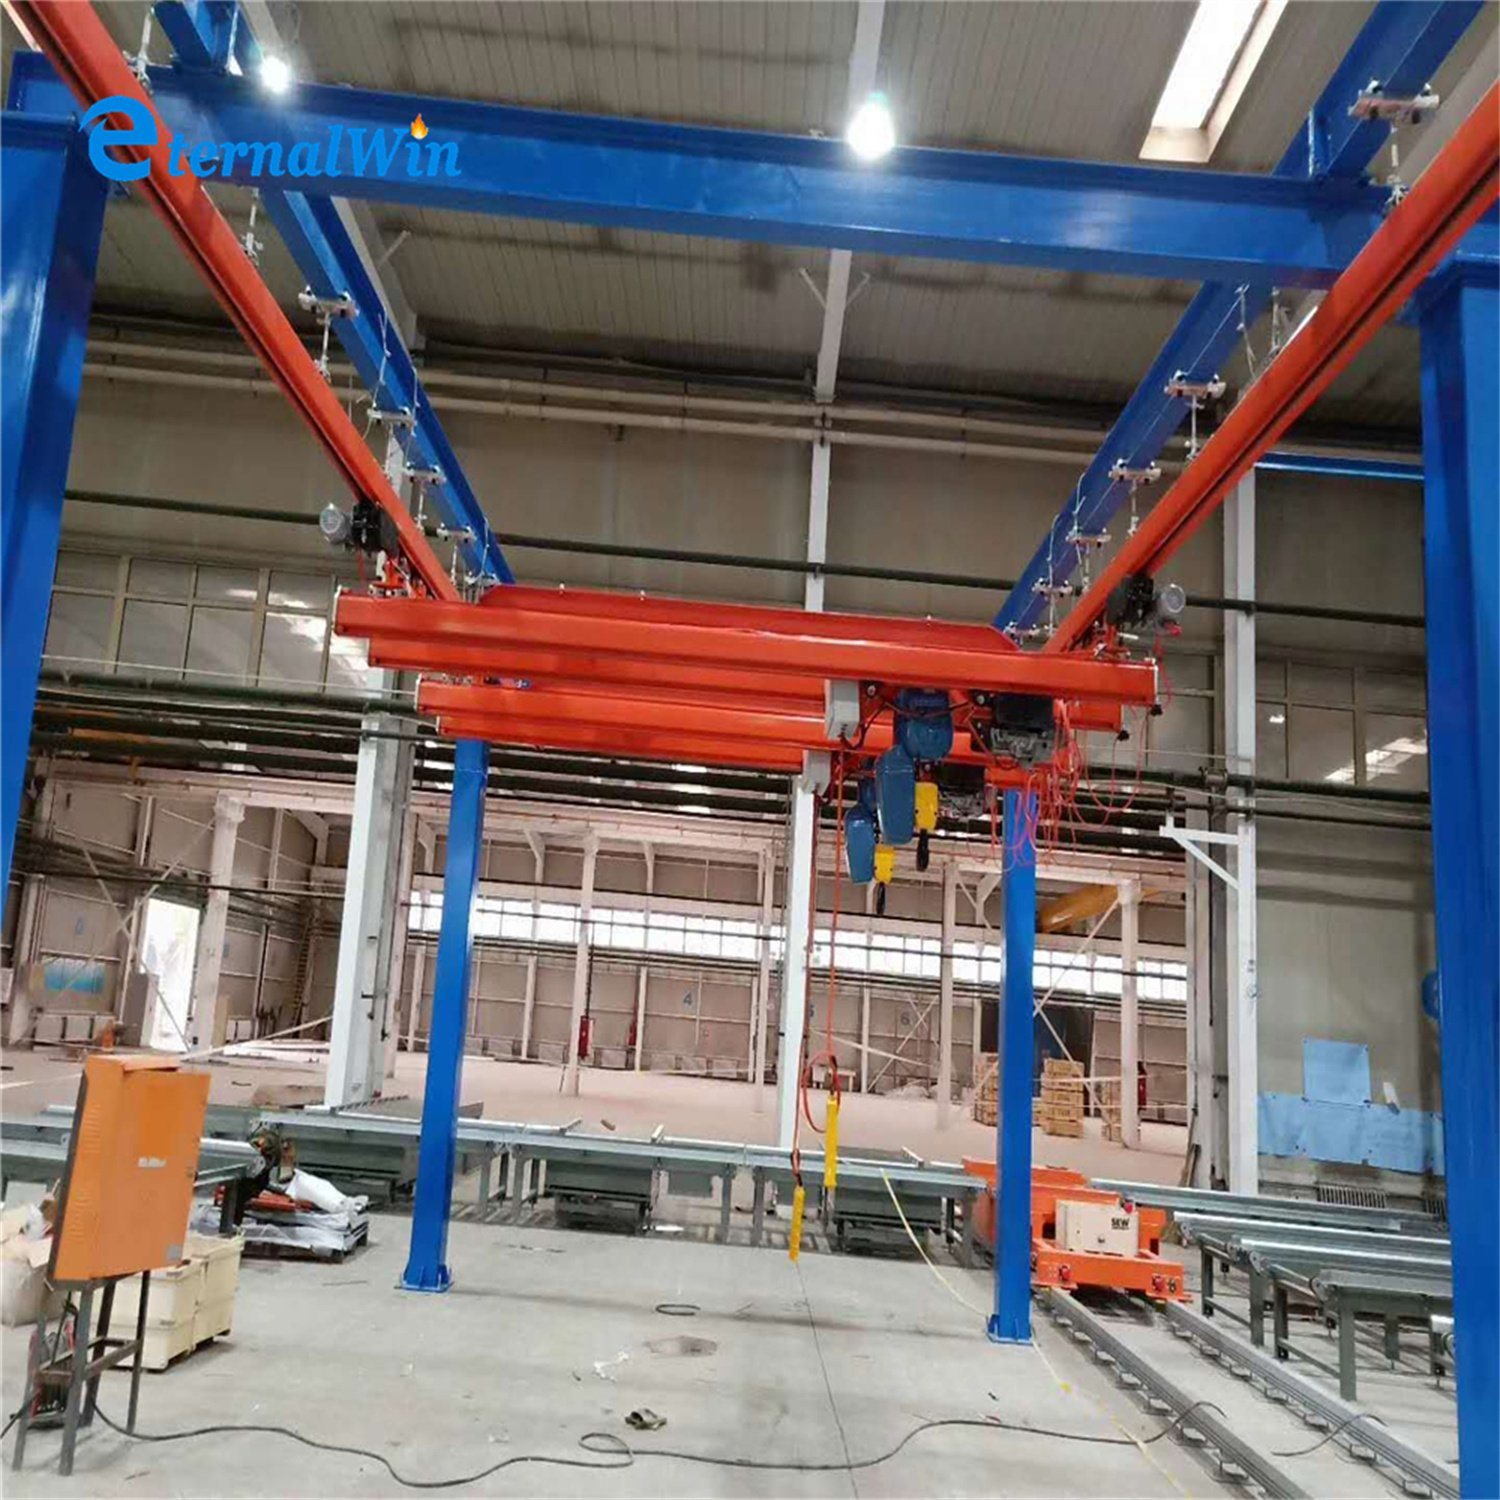 
                Craft Spray Paint Used Crane Hanging Rail Monorail System EOT Brug kraan gantry kraansysteem met hangende takel en staal Structuur
            